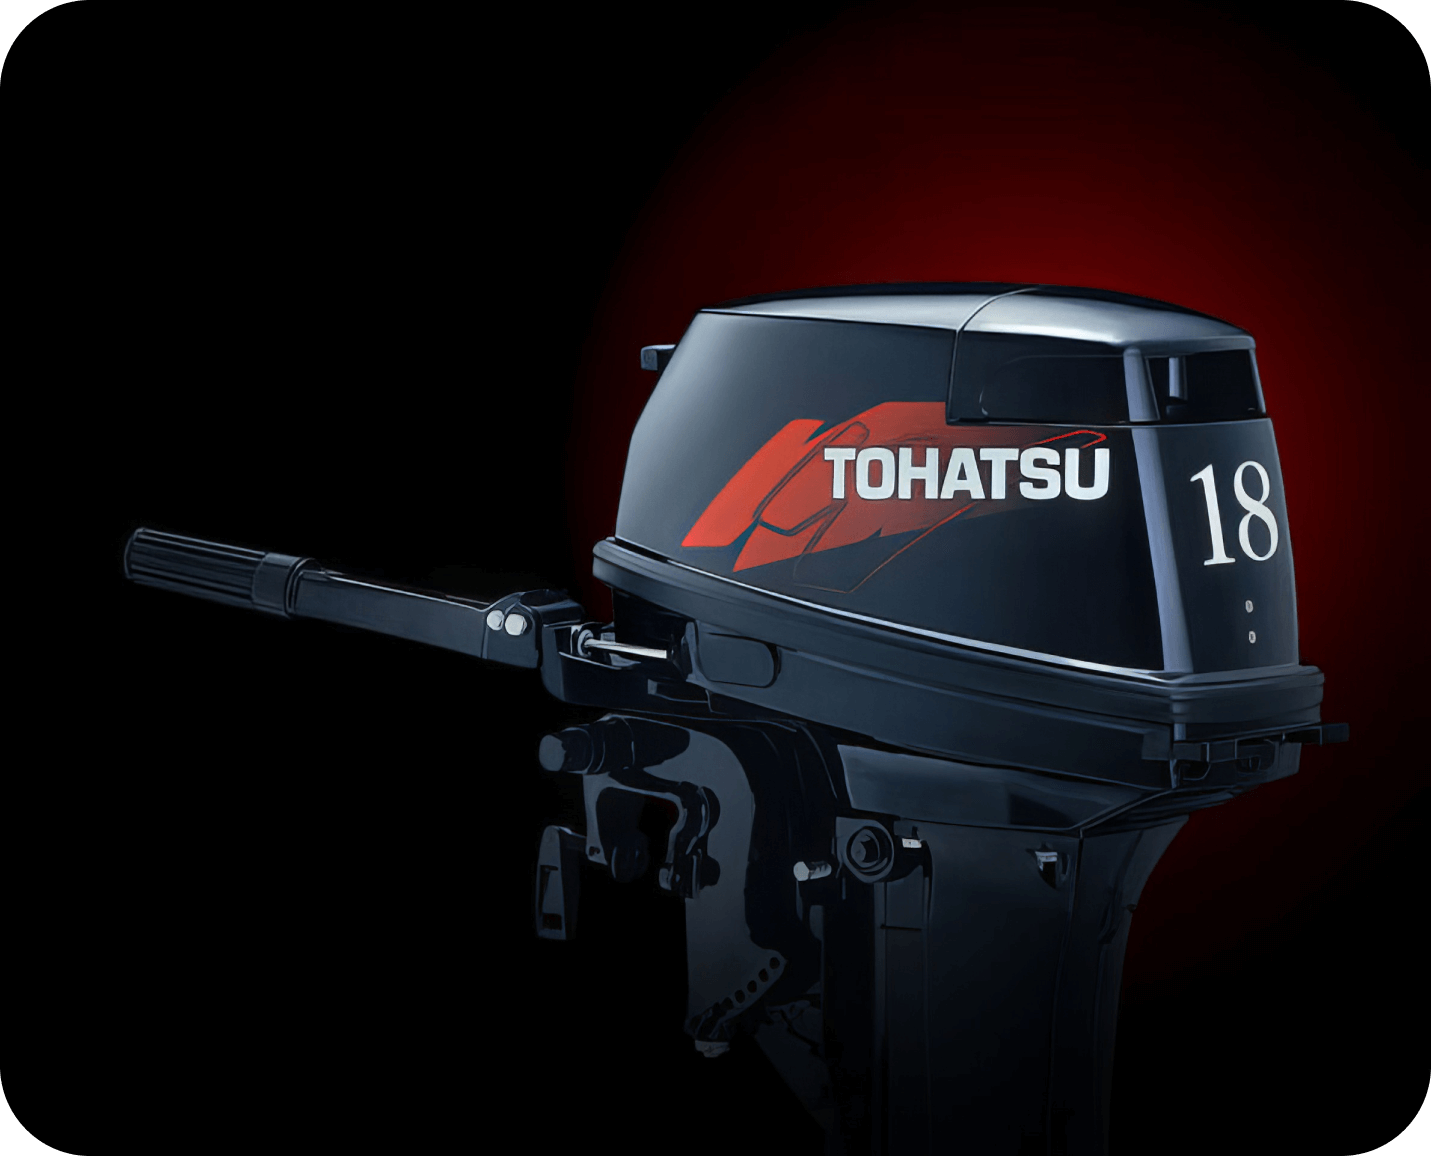 Сакура лодочные моторы. Лодочный мотор Tohatsu 18. Лодочный мотор Tohatsu m 18e2 s. Tohatsu m 18 e2 s. Tohatsu 9.9 и 18.